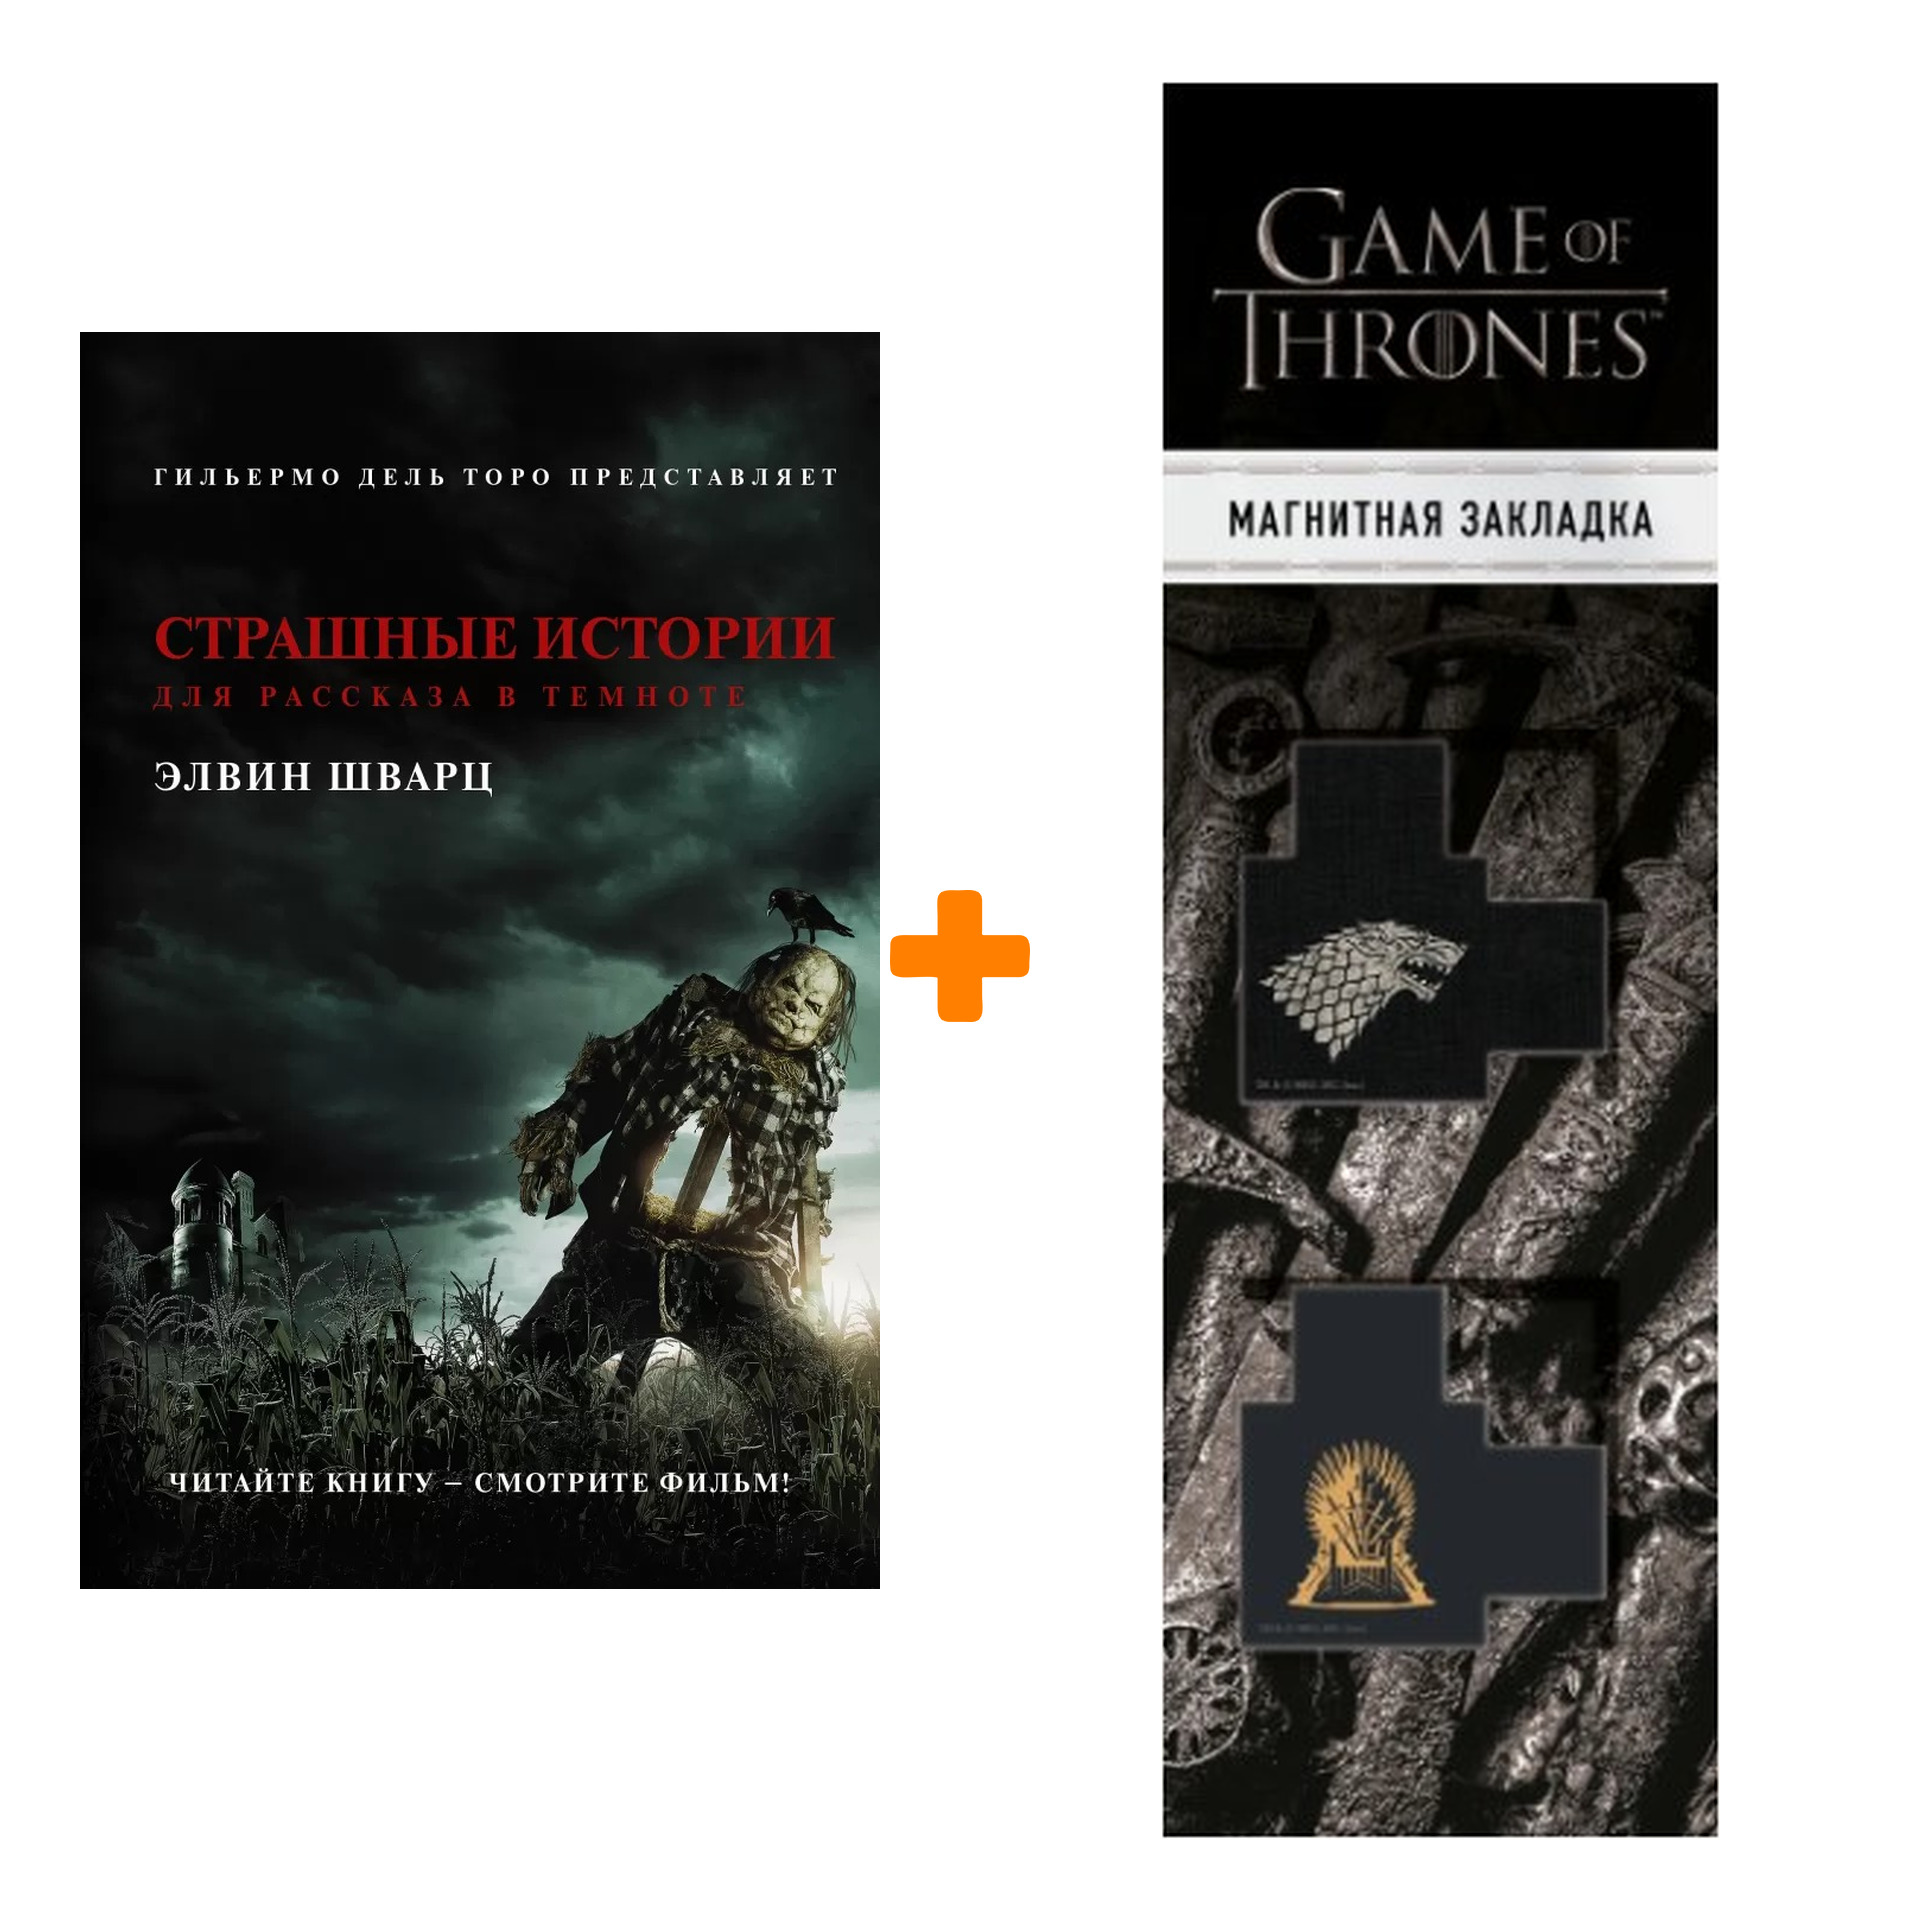 Набор Страшные истории для рассказа в темноте Шварц Э. + Закладка Game Of Thrones Трон и Герб Старков магнитная 2-Pack